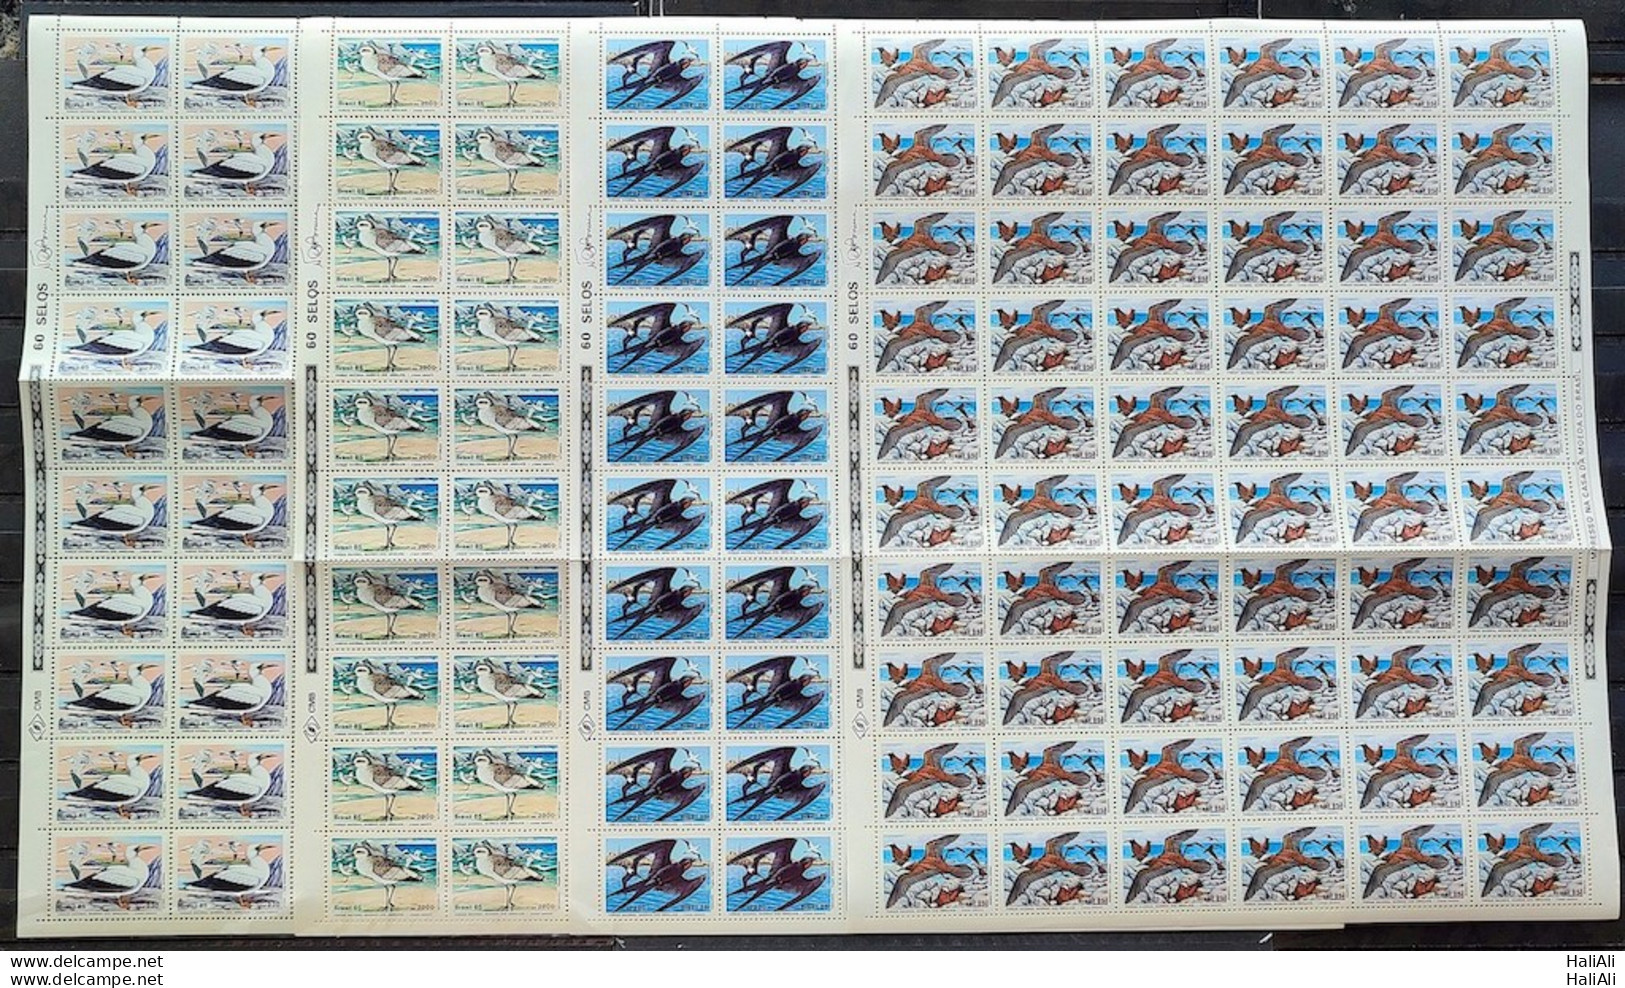 C 1461 Brazil Stamp Fauna Abrolhos Ave Bird 1985 Sheet Complete Series - Ungebraucht